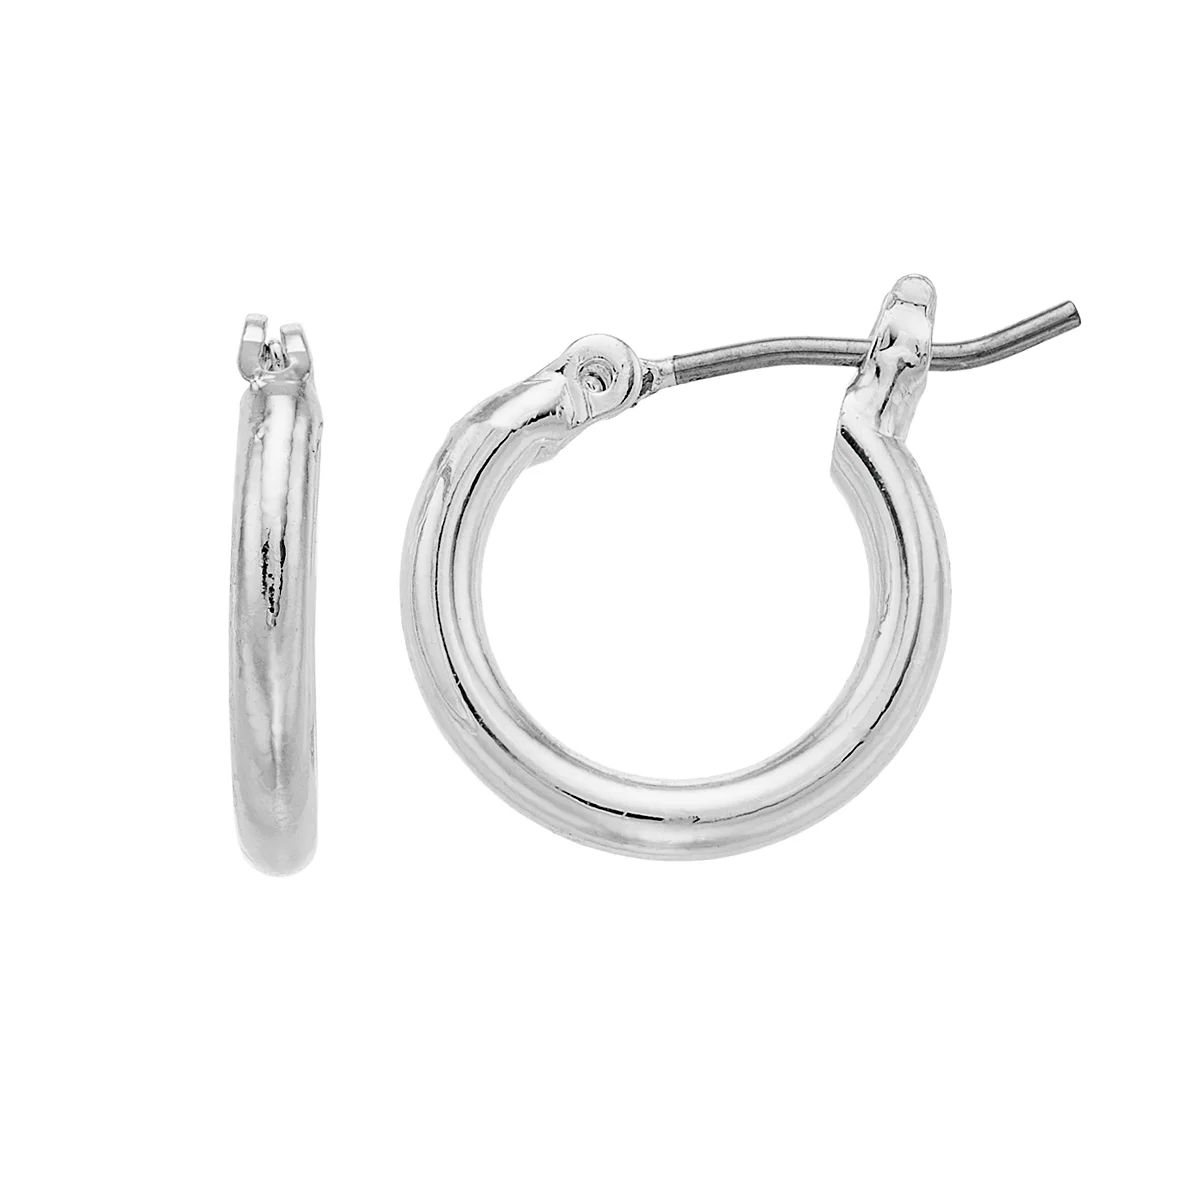 LC Lauren Conrad Silver Tone Nickel Free Hoop Earrings | Kohl's